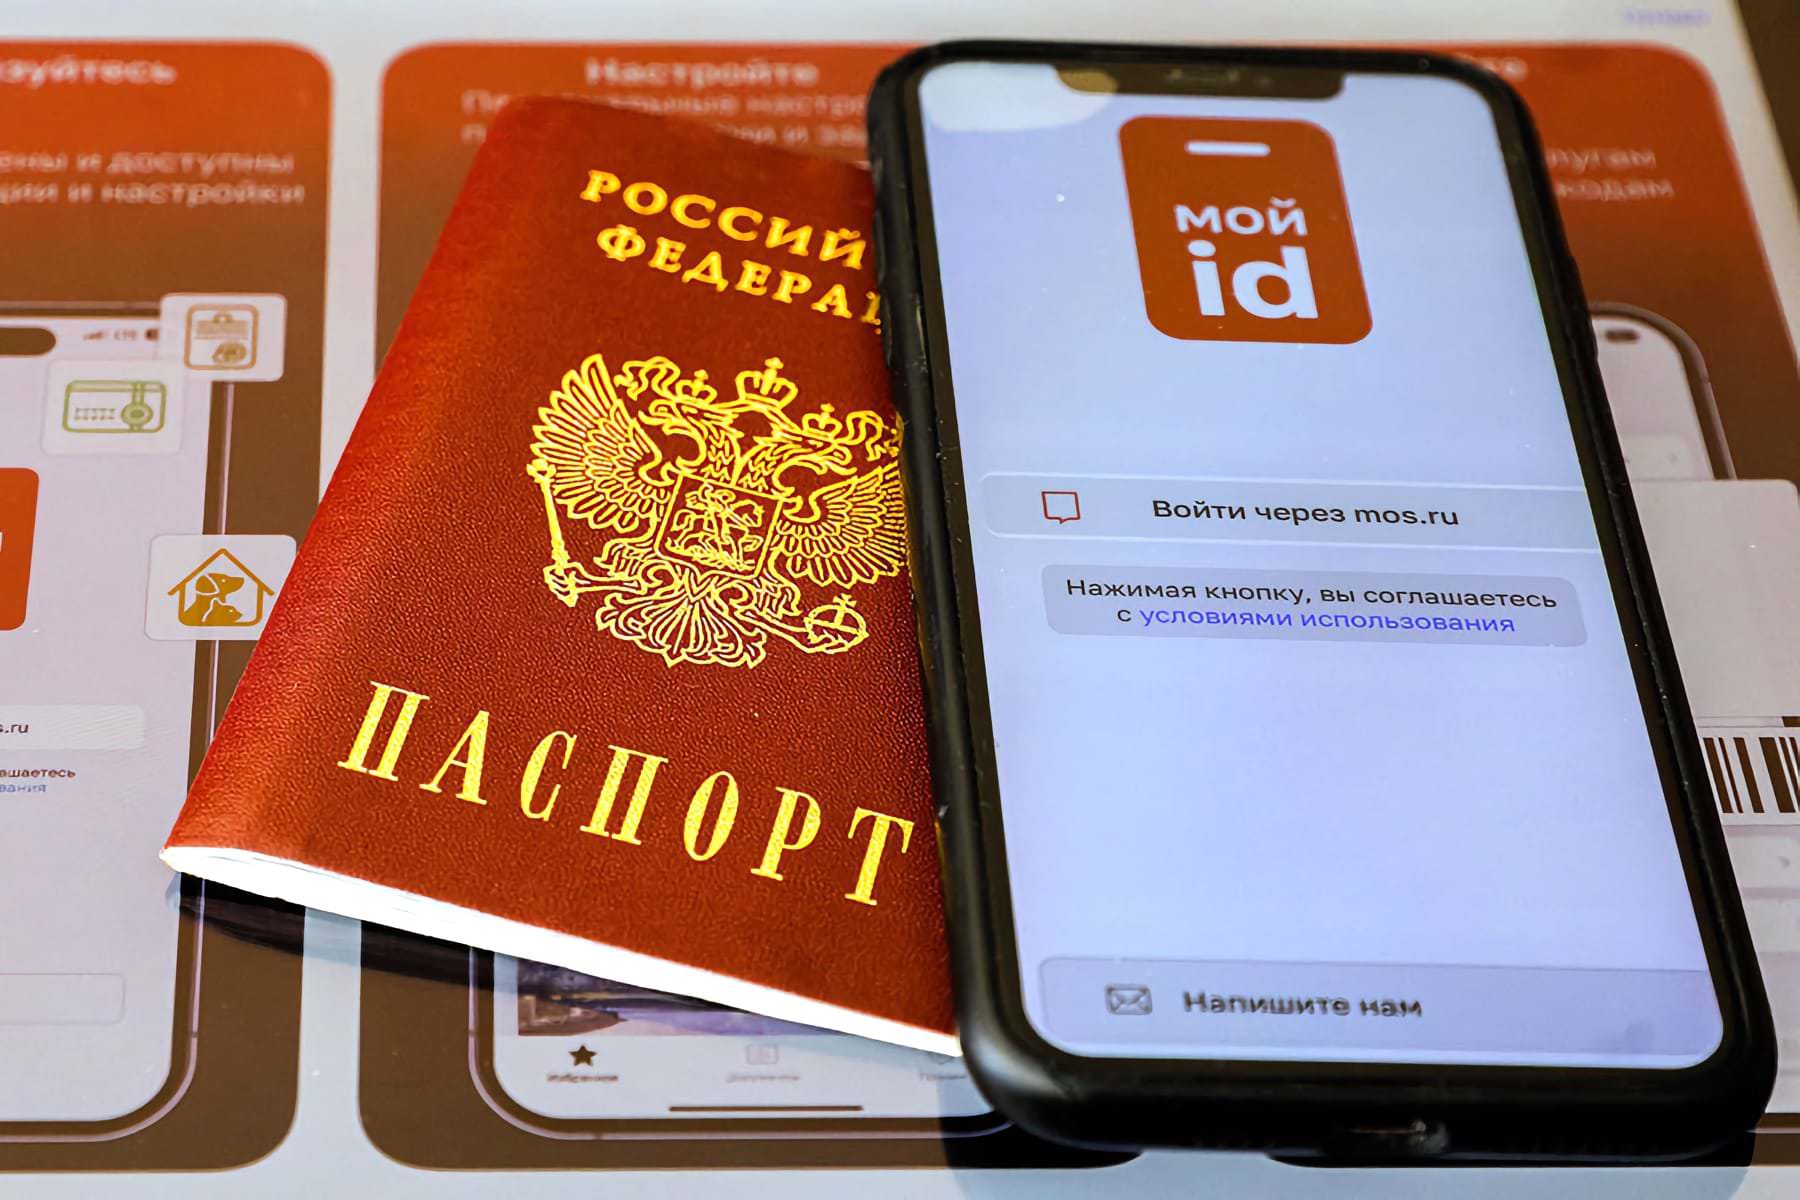 Выпущено приложение для смартфонов, где доступны цифровой паспорт, водительские права и другие документы